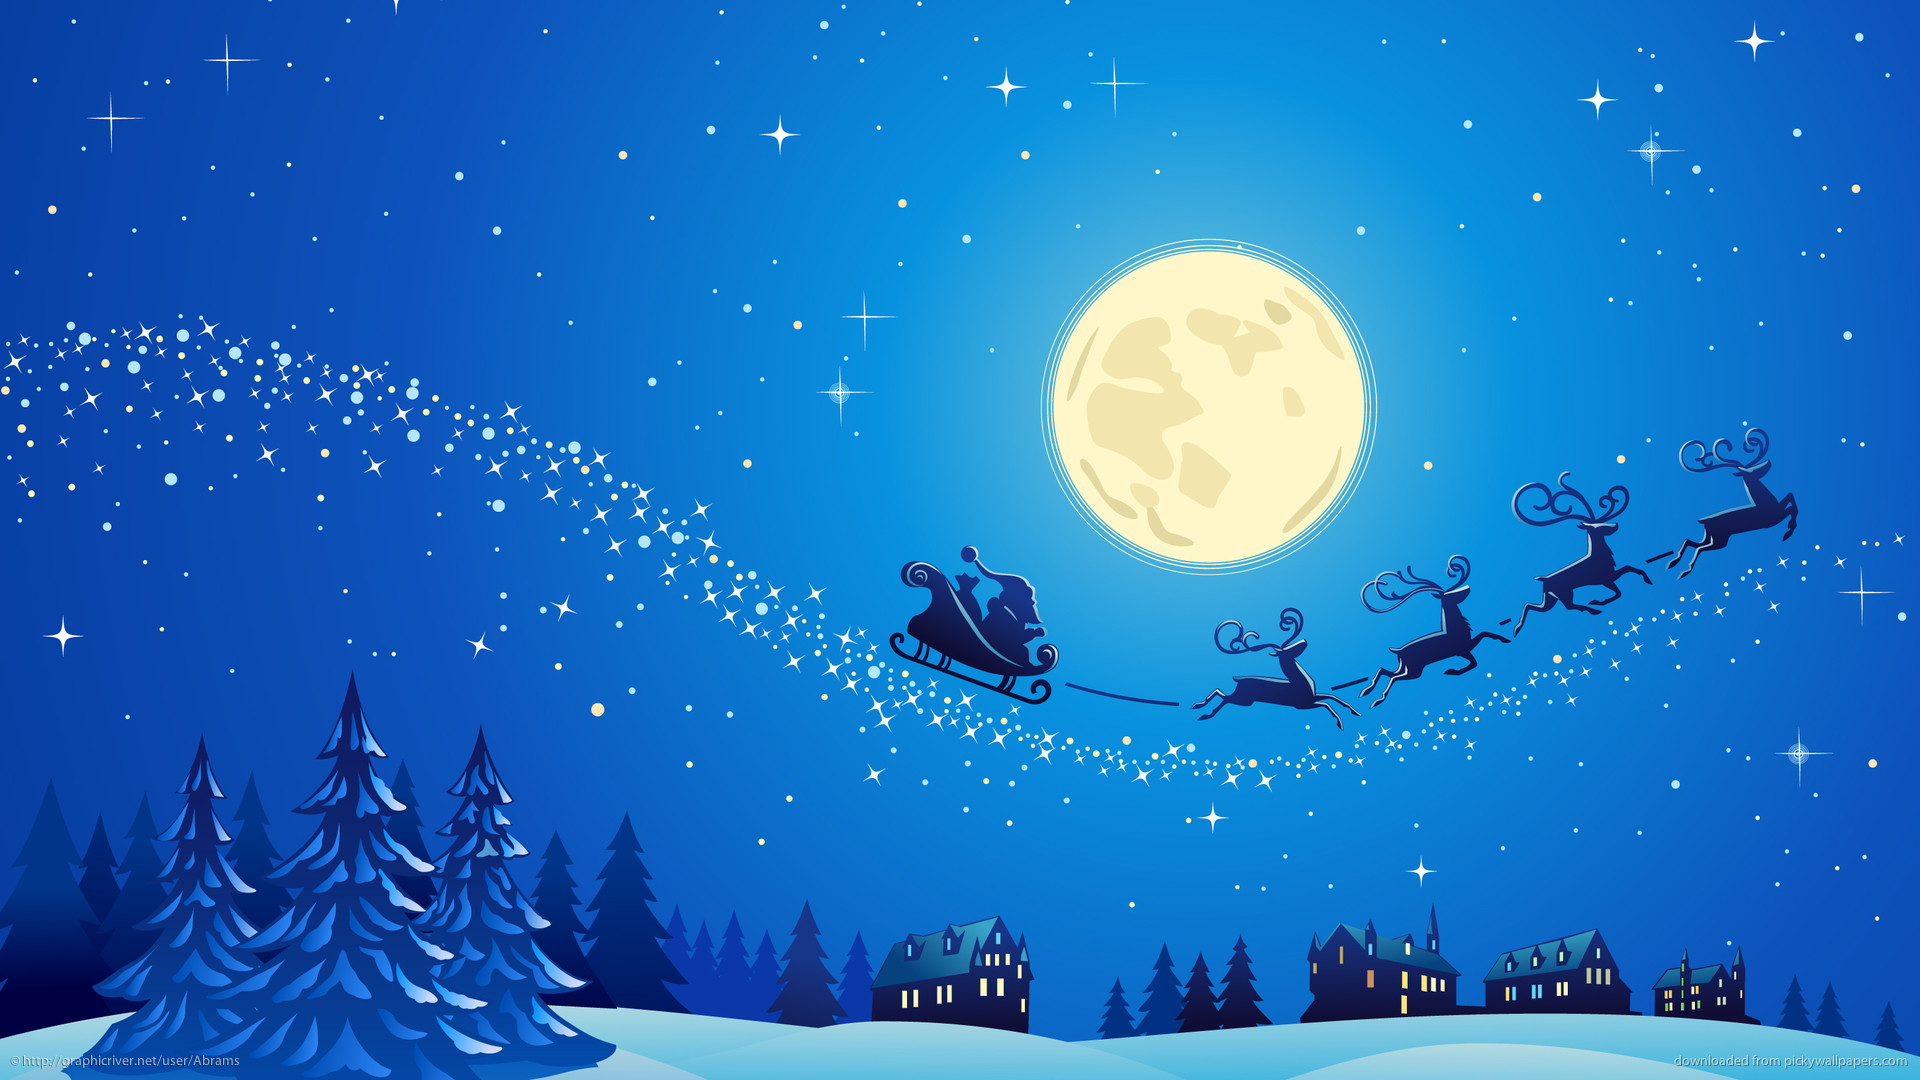 Hãy xem hình nền Noel đầy thú vị để trang trí cho màn hình điện thoại hoặc máy tính của bạn trong mùa lễ hội này. Wallpaper Noel sẽ mang đến cho bạn không khí ấm áp và đầy niềm vui chào đón Giáng sinh.